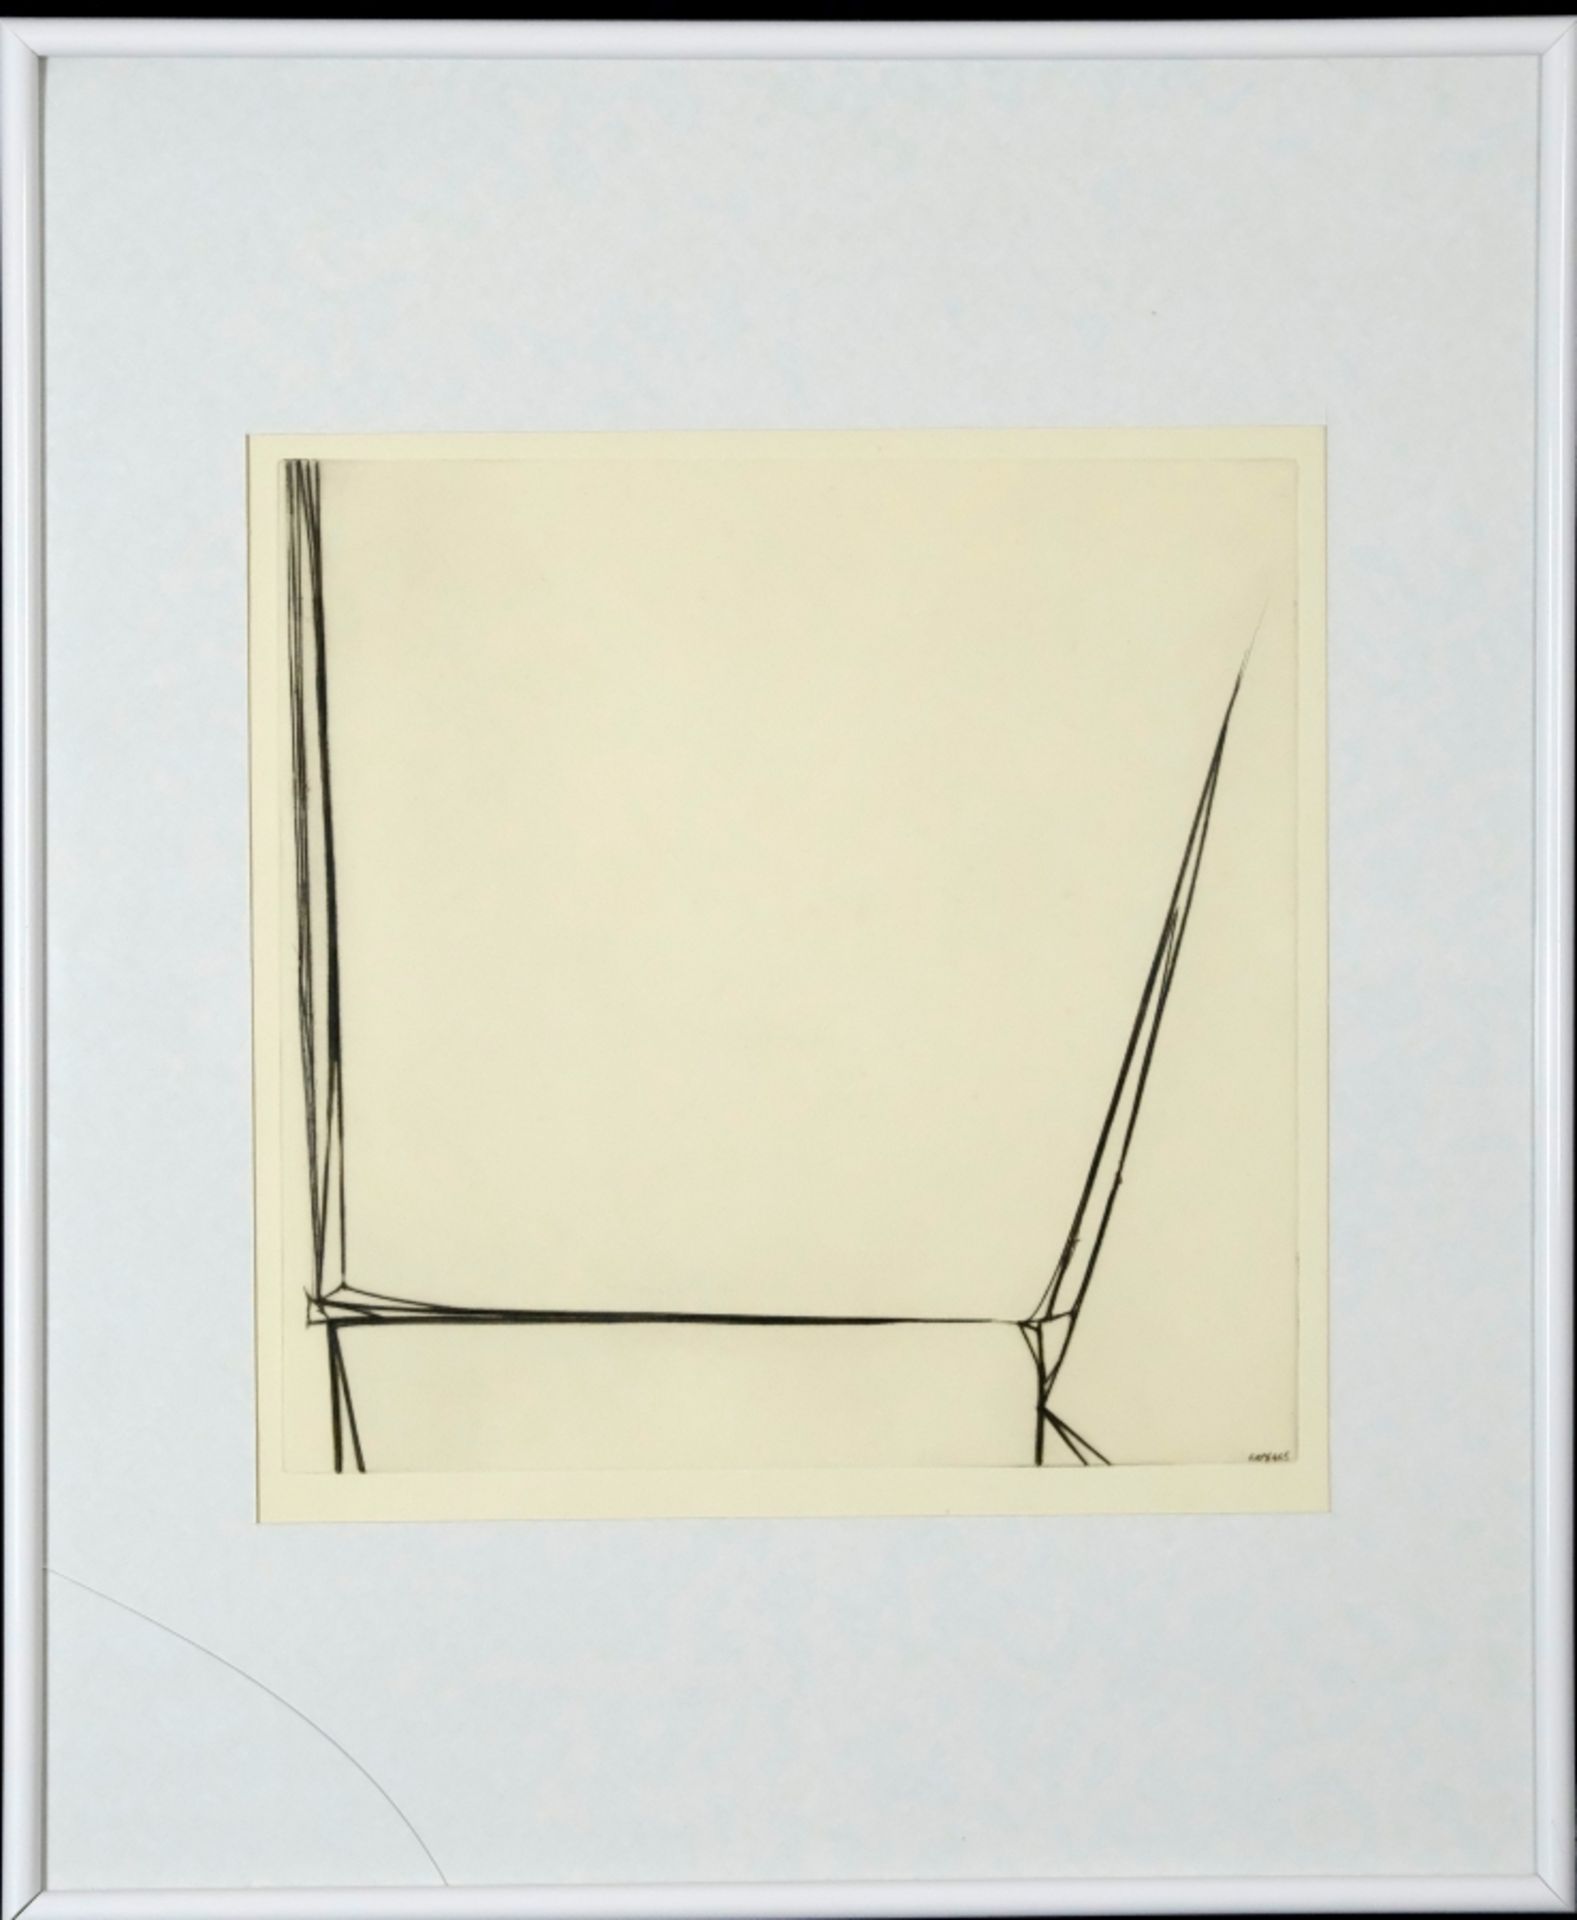 Hauser, Erich (1930-2004) "Mi.4.65.", 1965, drypoint. - Image 2 of 3